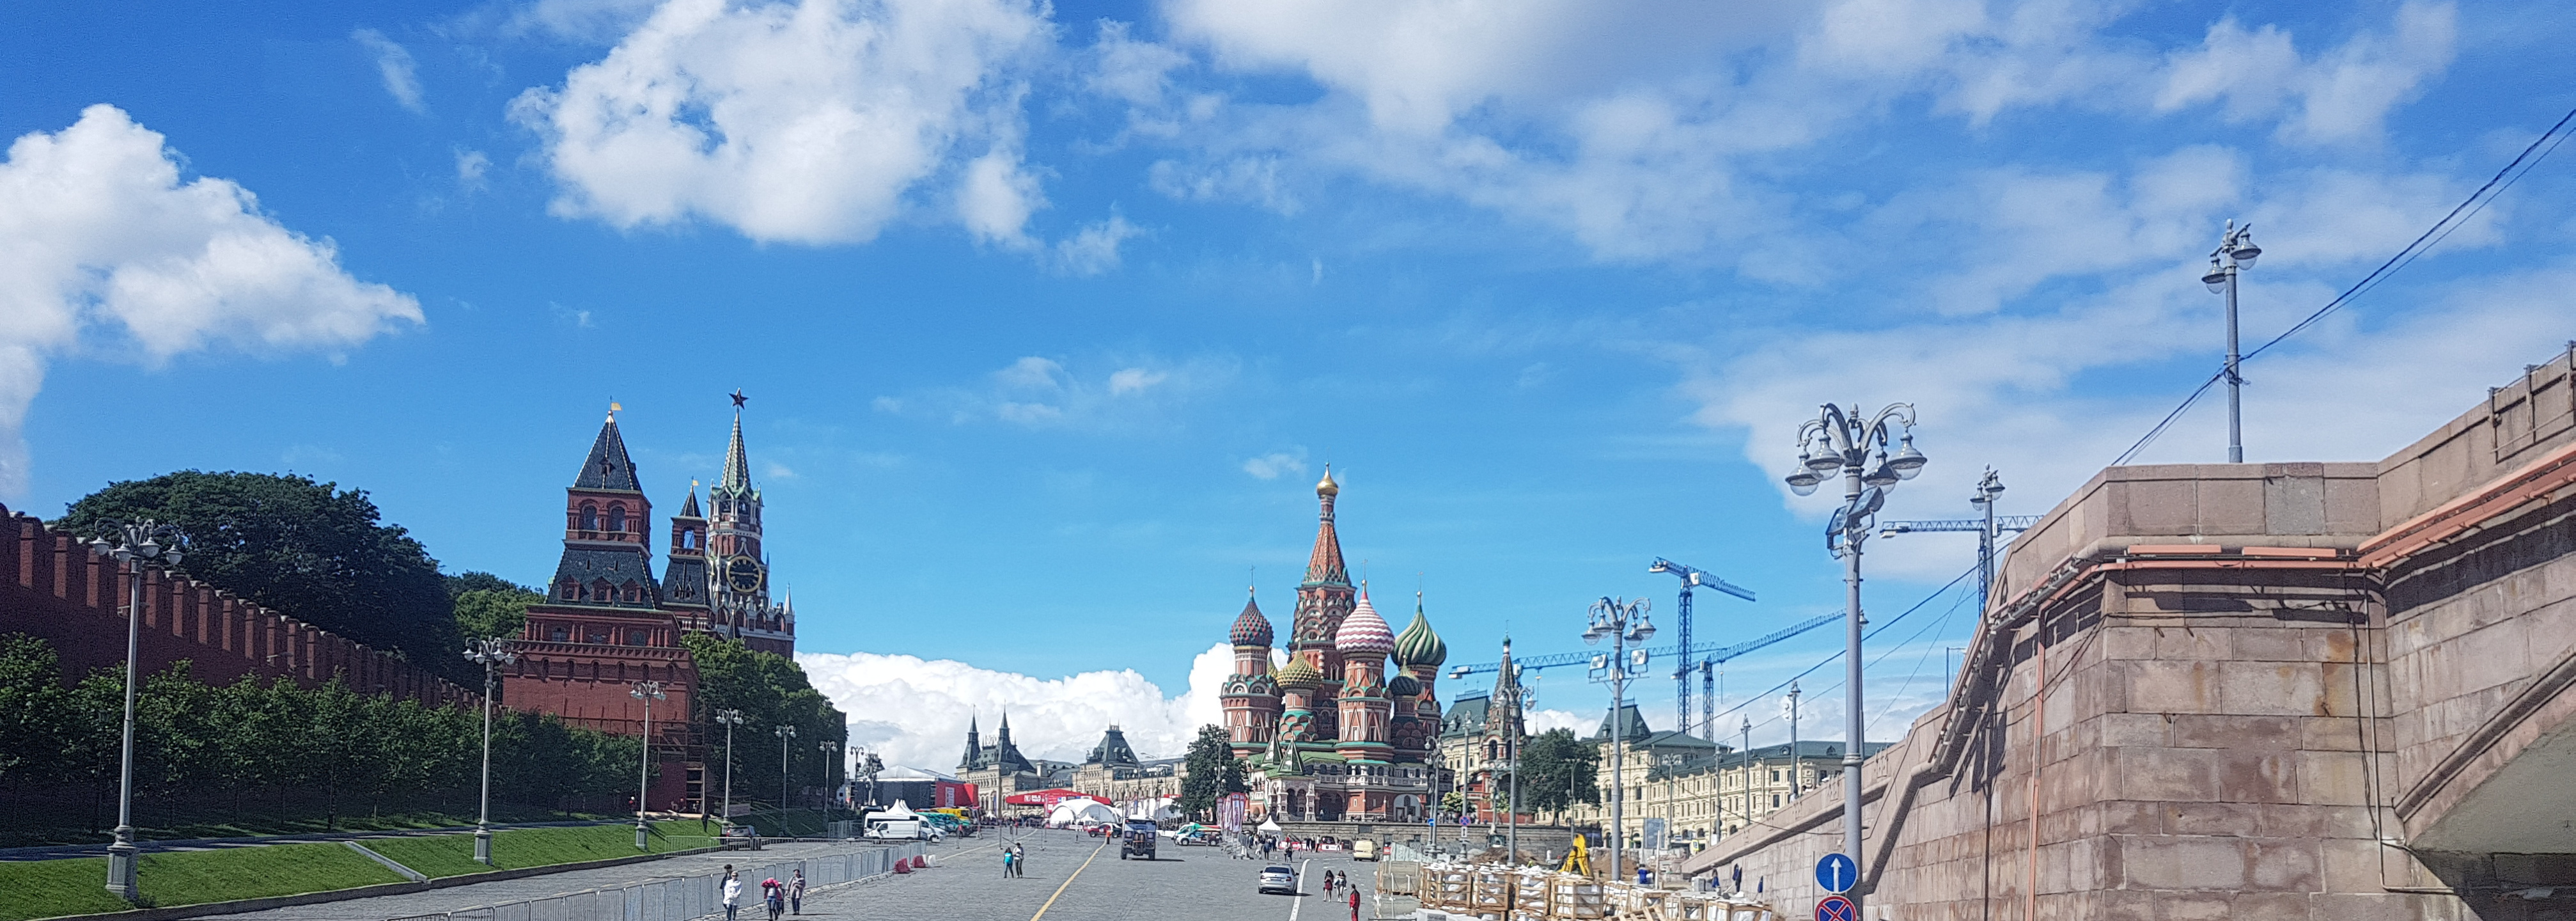 20170706-144329-Moscow-Kreml-SJ-3.jpg